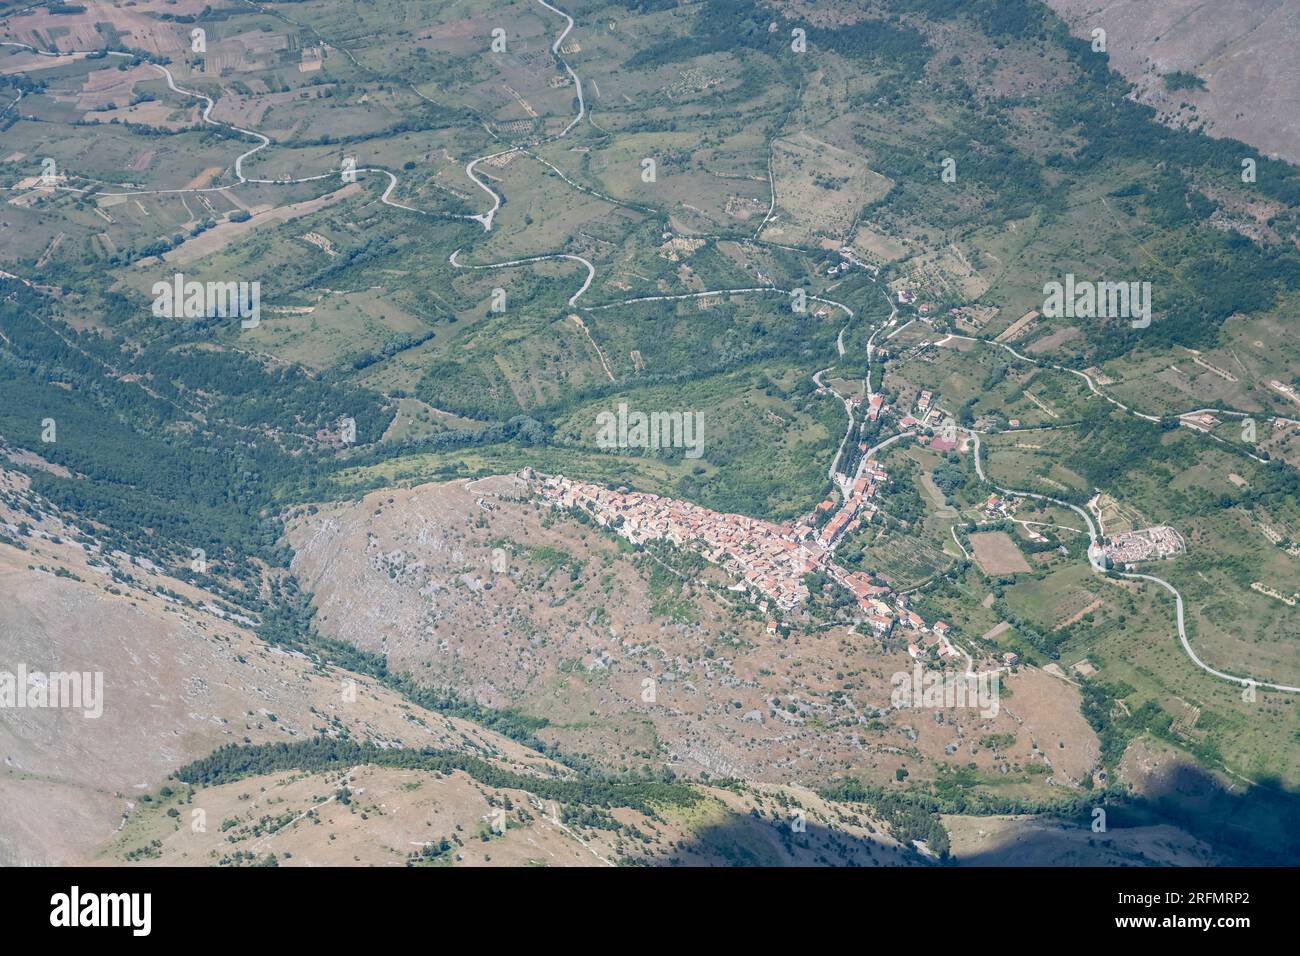 Paesaggio aereo, da un aliante, con villaggio di montagna nella verde valle, girato da sud-ovest in una luminosa luce estiva a Ortona de Marsi, Apennin Foto Stock